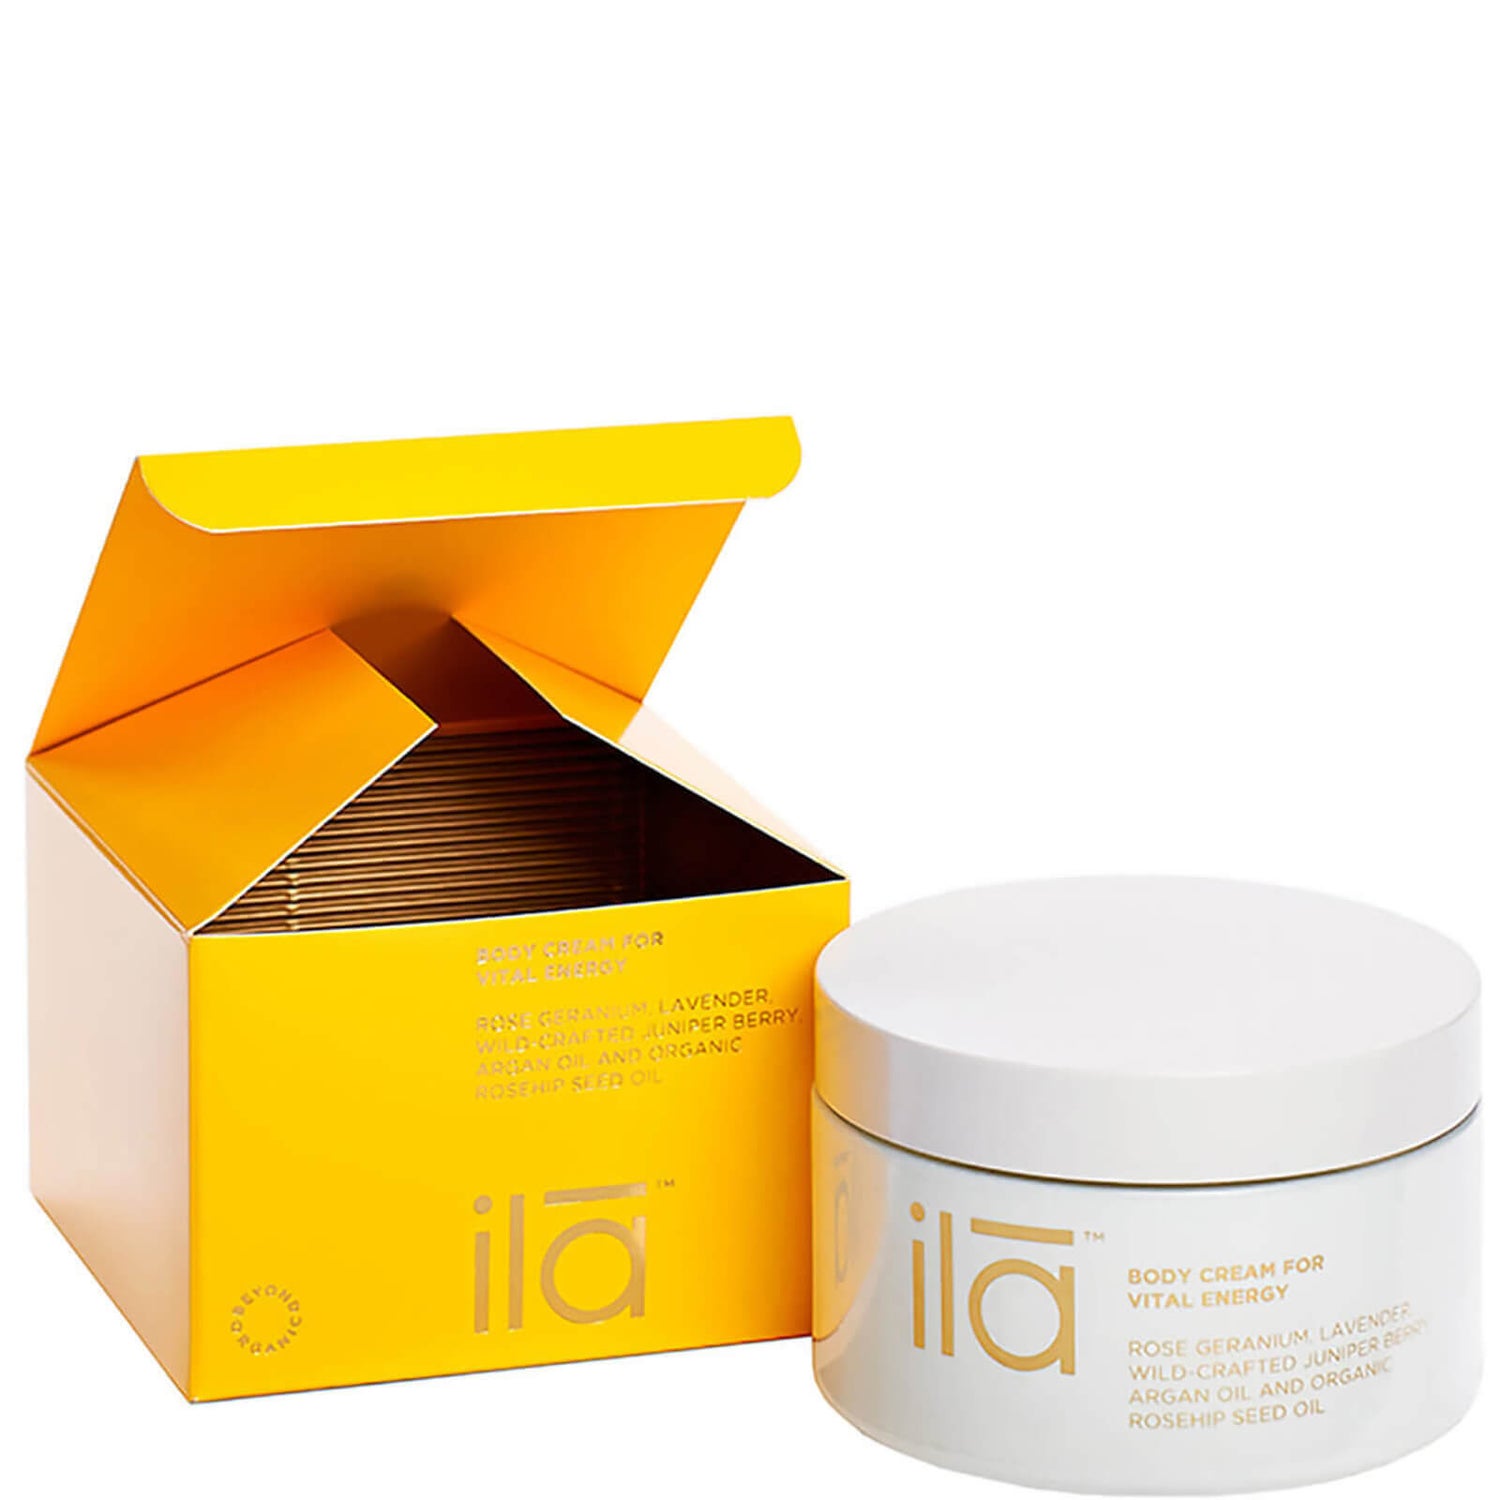 ila-spa 活力能量身体护肤霜 200g